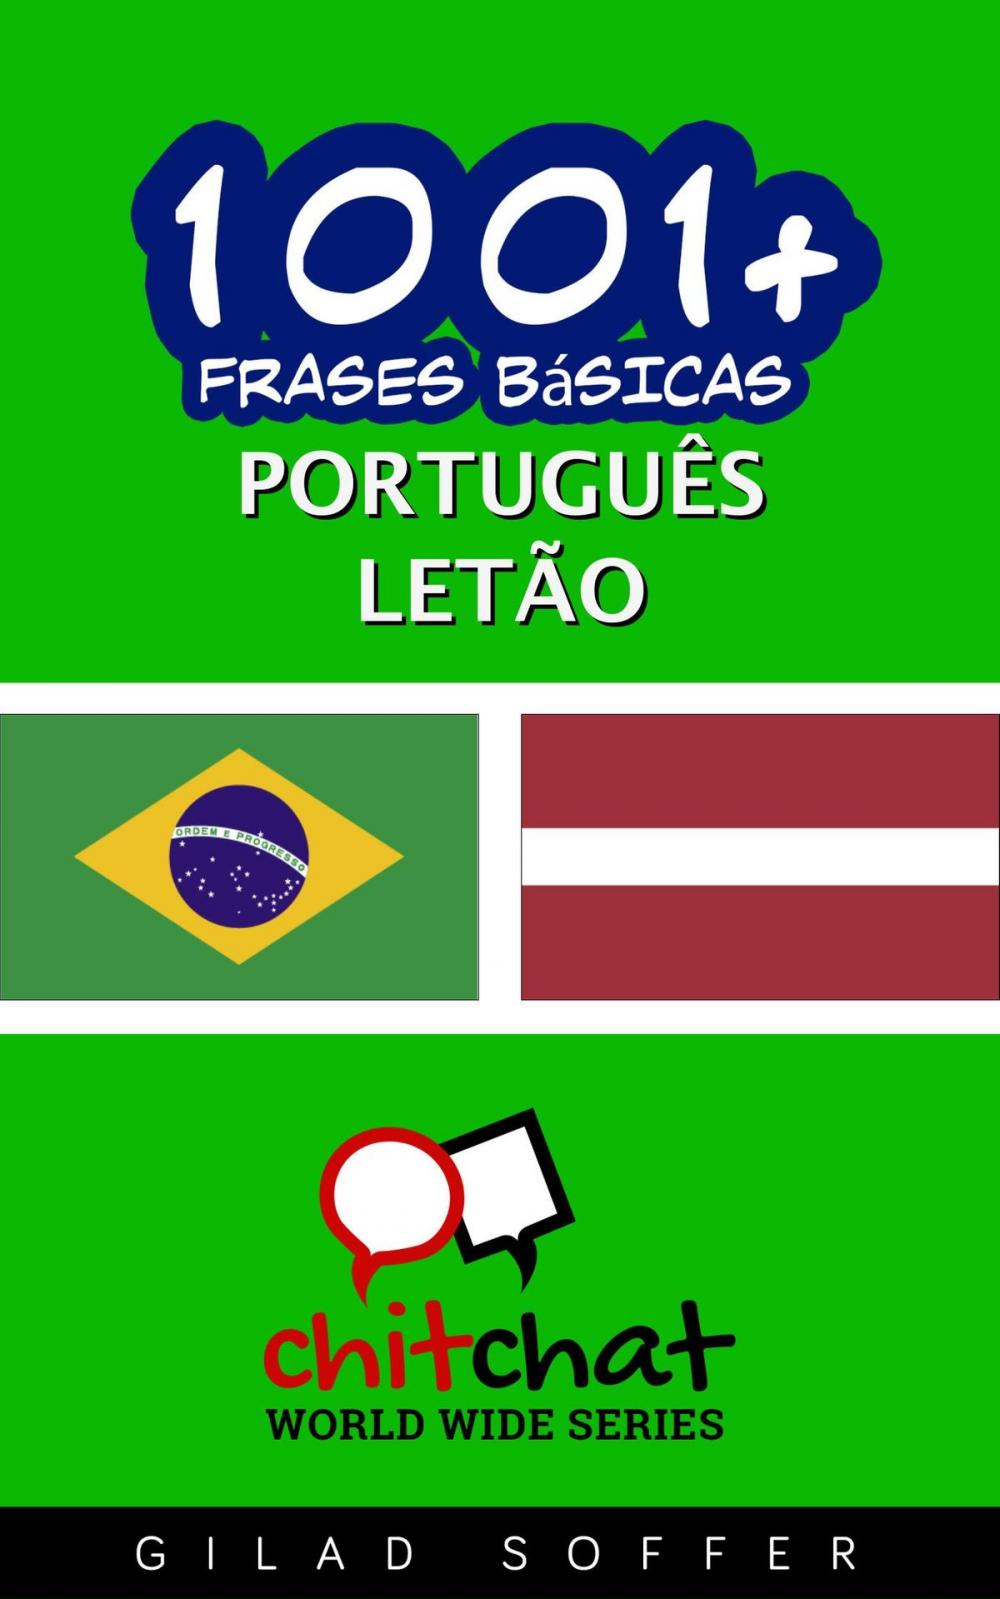 Big bigCover of 1001+ Frases Básicas Português - letão